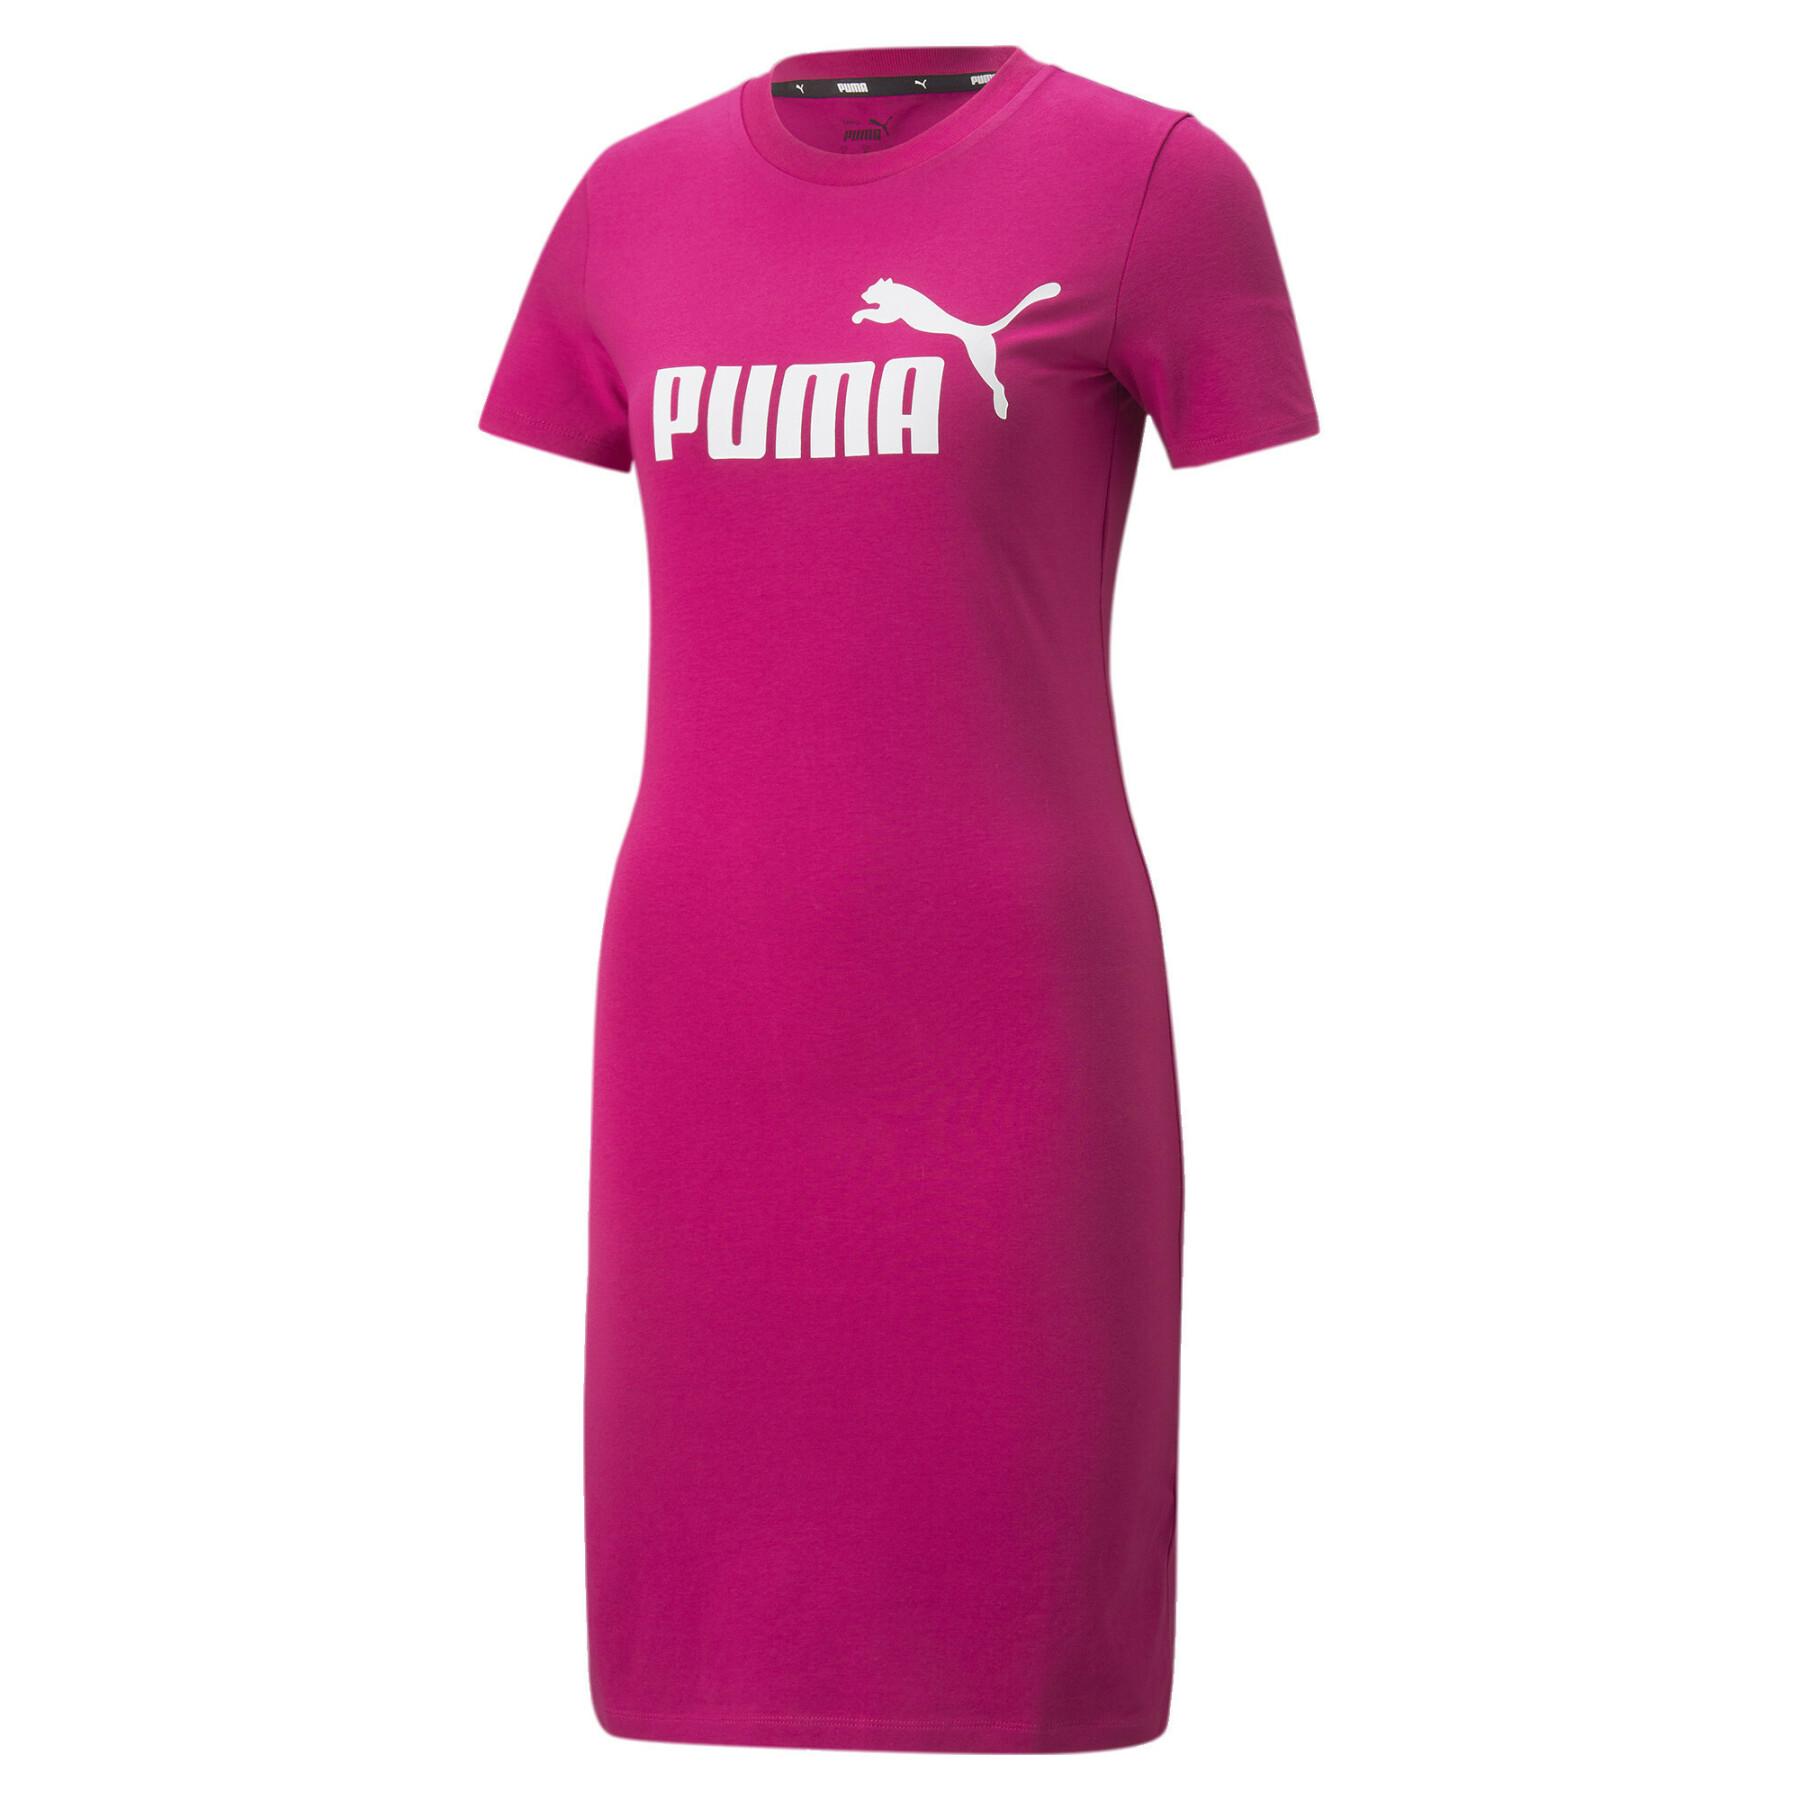 Vestuário feminino Puma Essential